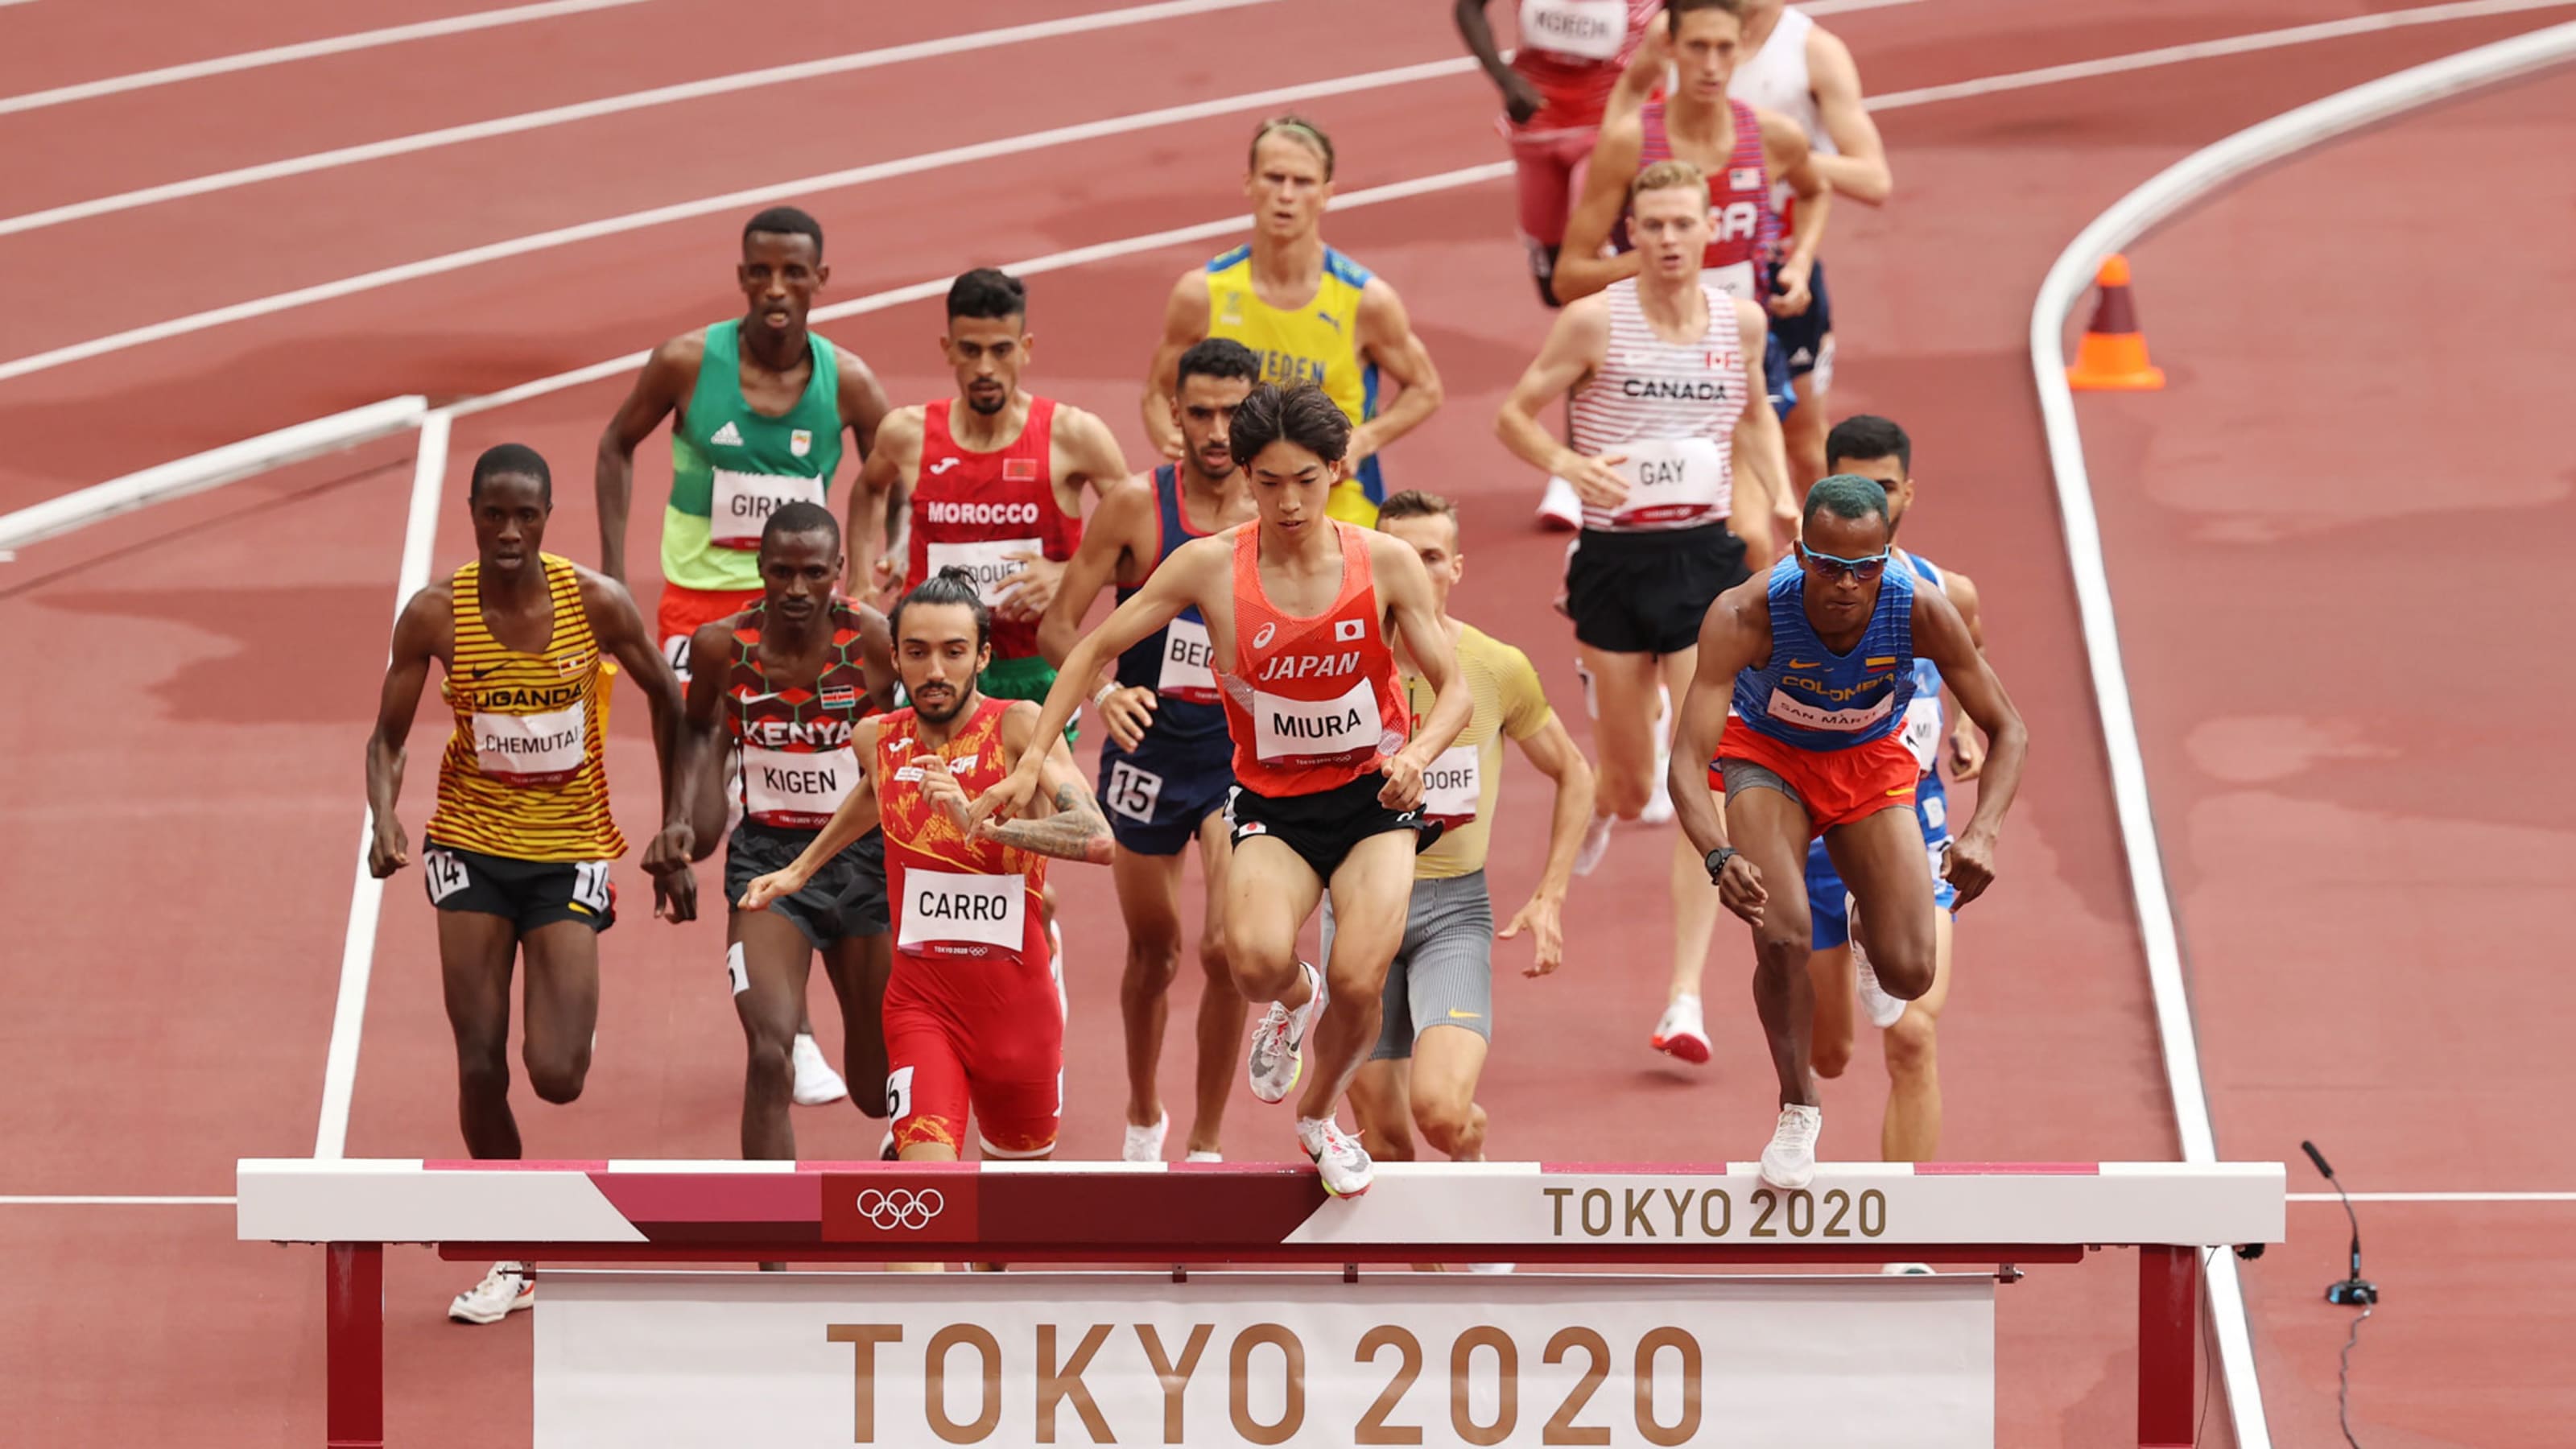 8月2日 東京五輪 陸上競技 男子3000メートル障害決勝の放送予定 予選2位の三浦龍司 さらなる高みへ